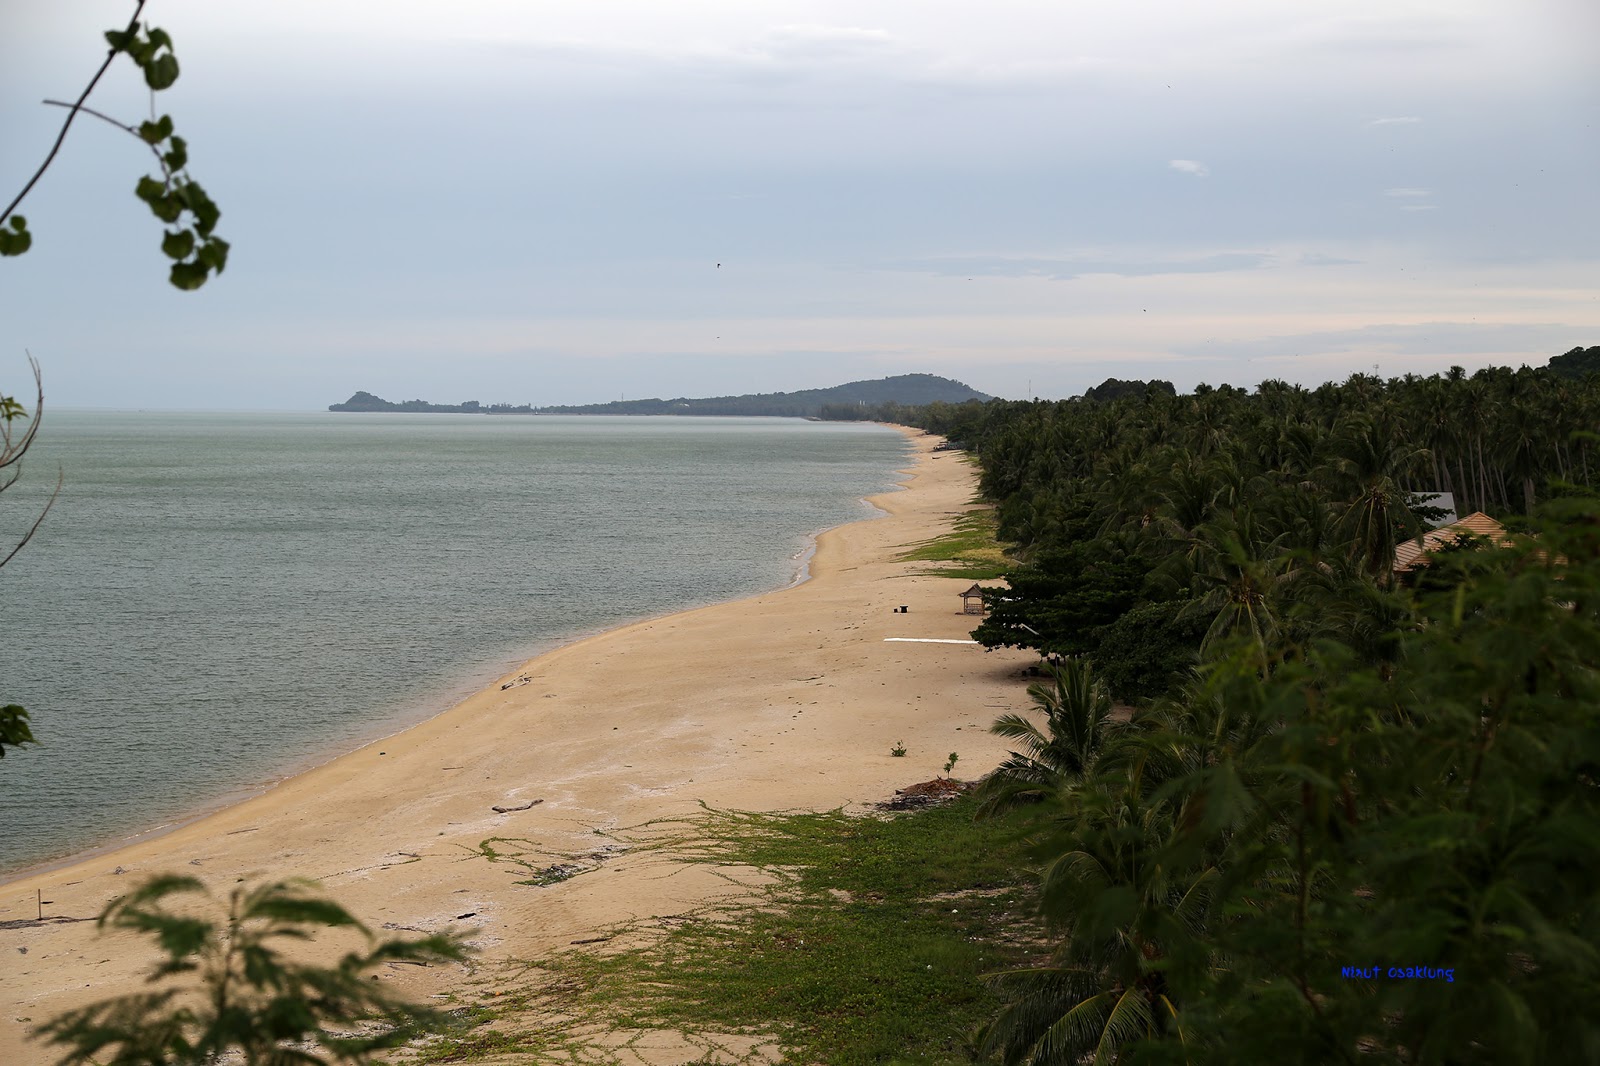 Zdjęcie Phlai Dam Beach - popularne miejsce wśród znawców relaksu